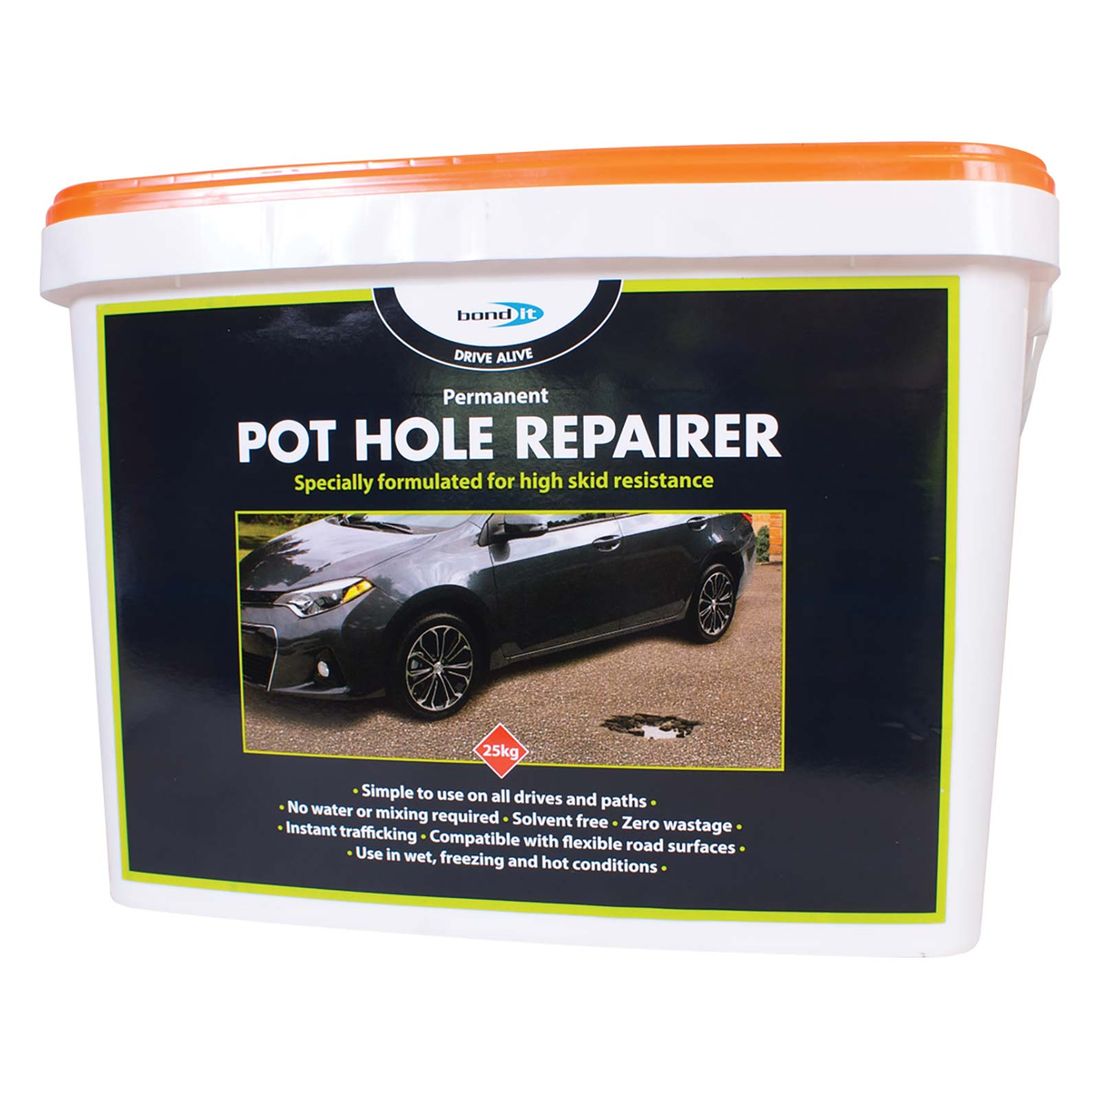 Drivealive Pot Hole Repairer 25Kg